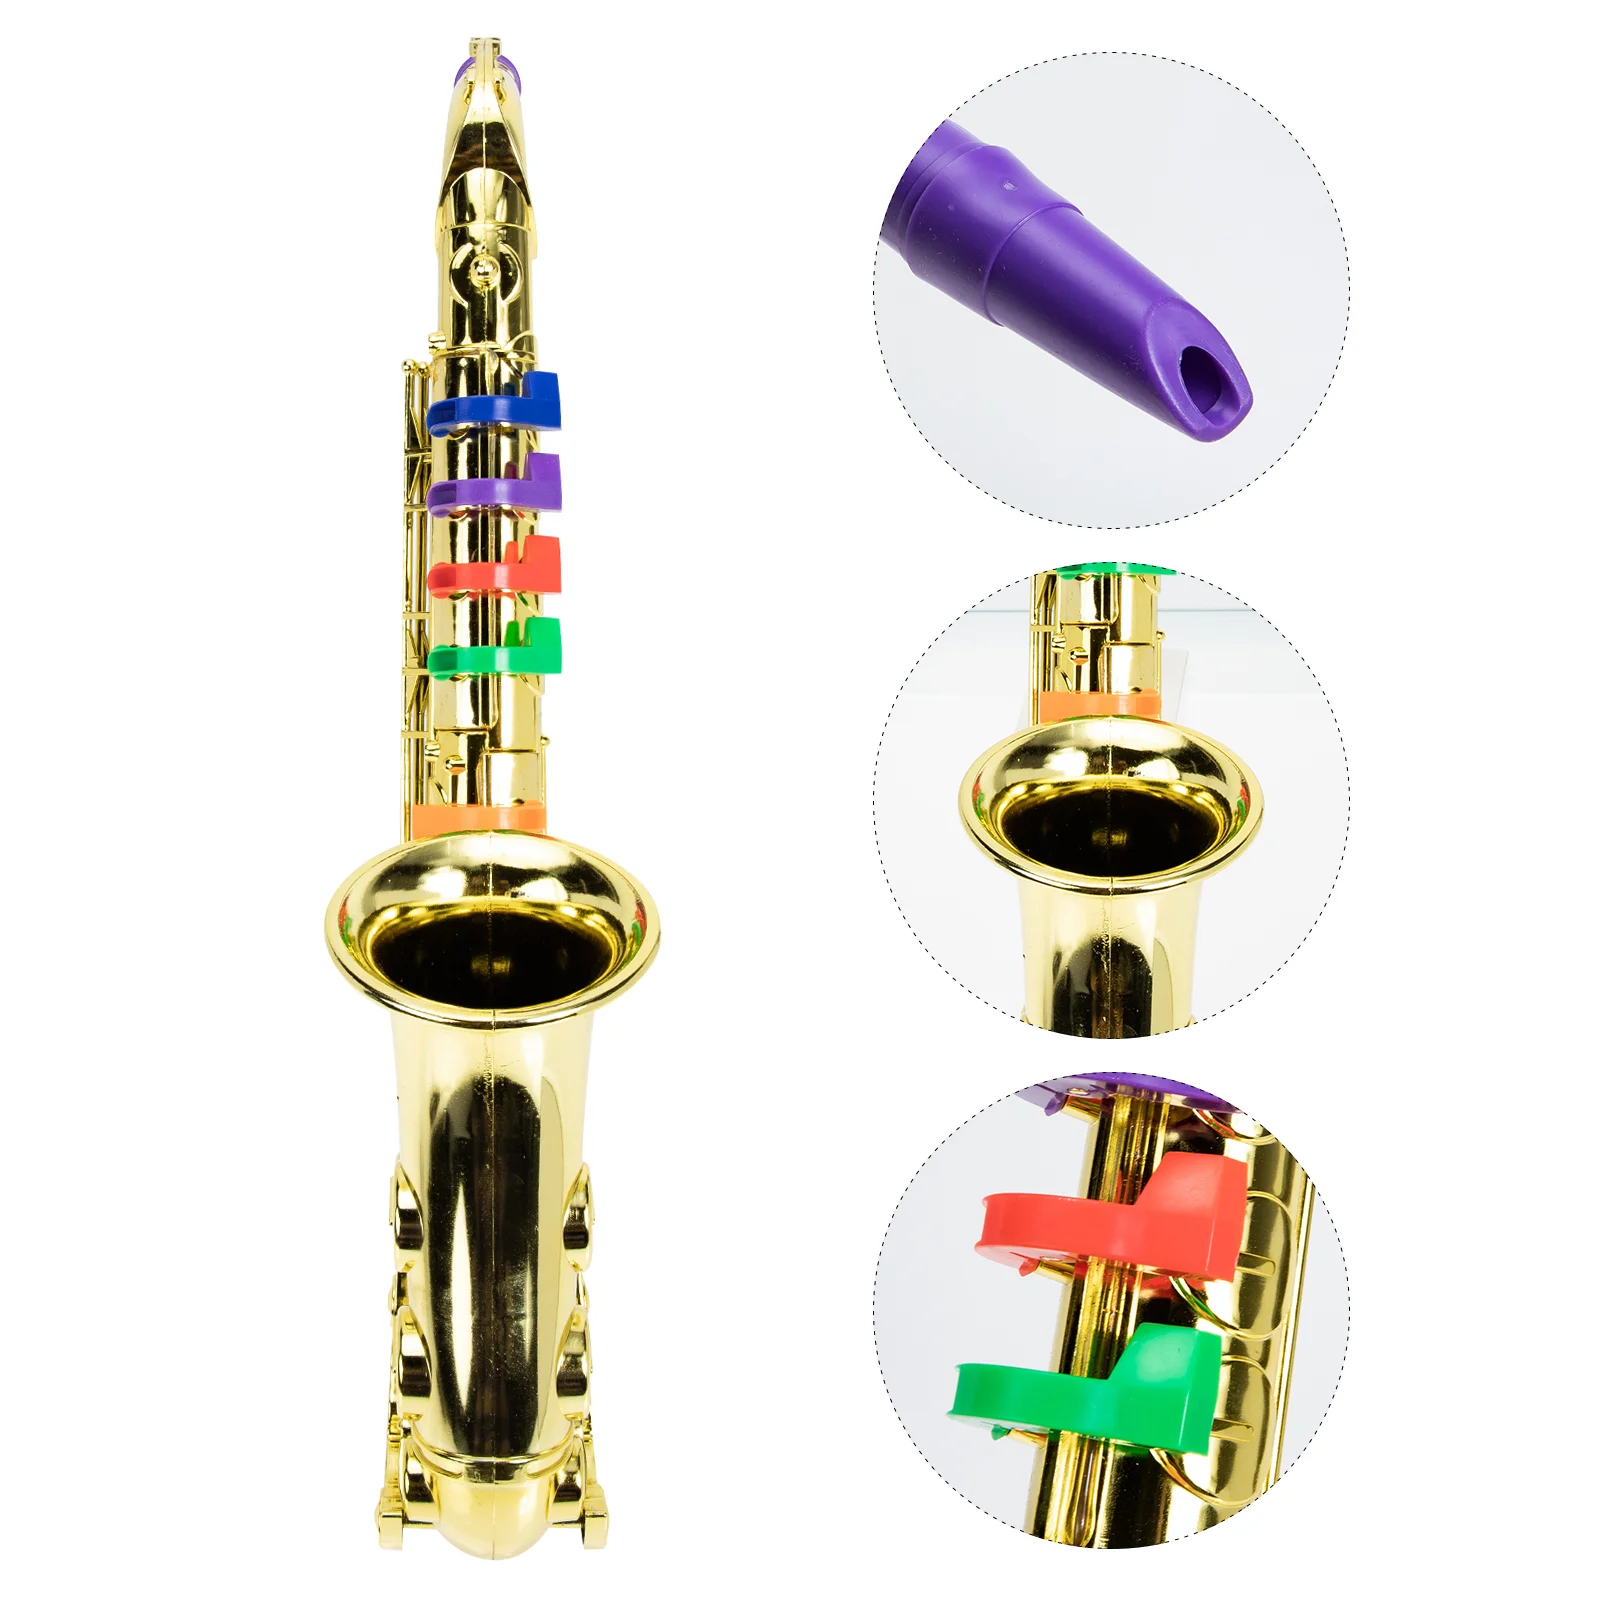 

Имитация саксофона, игрушка, декоративный саксофон, игрушка для детей, играющий в музыкальный инструмент